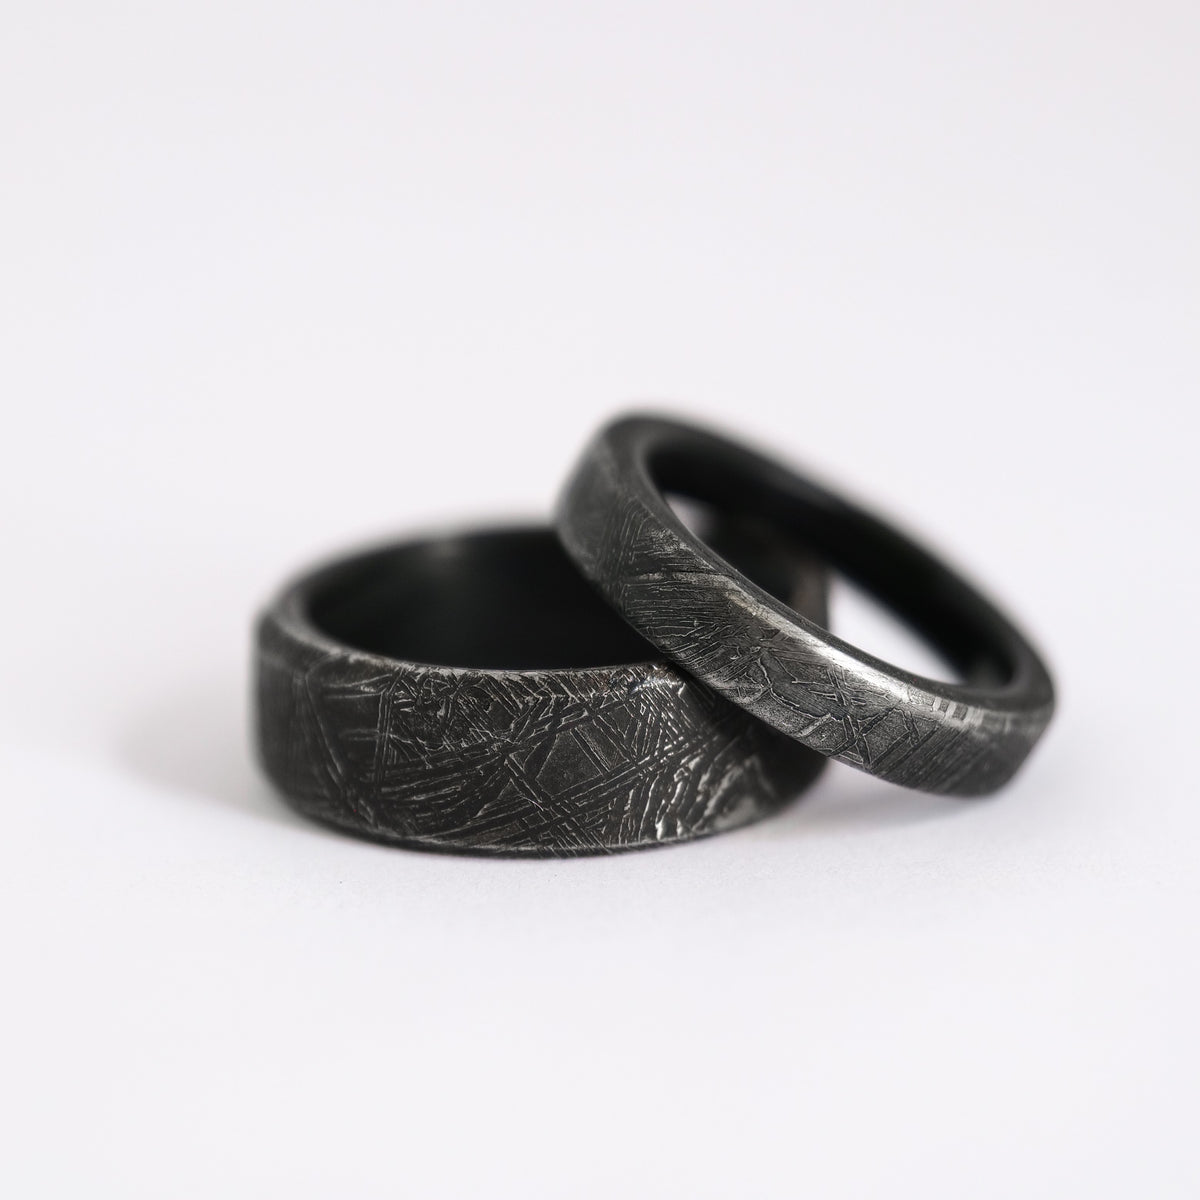 Ring Made Of Meteorite